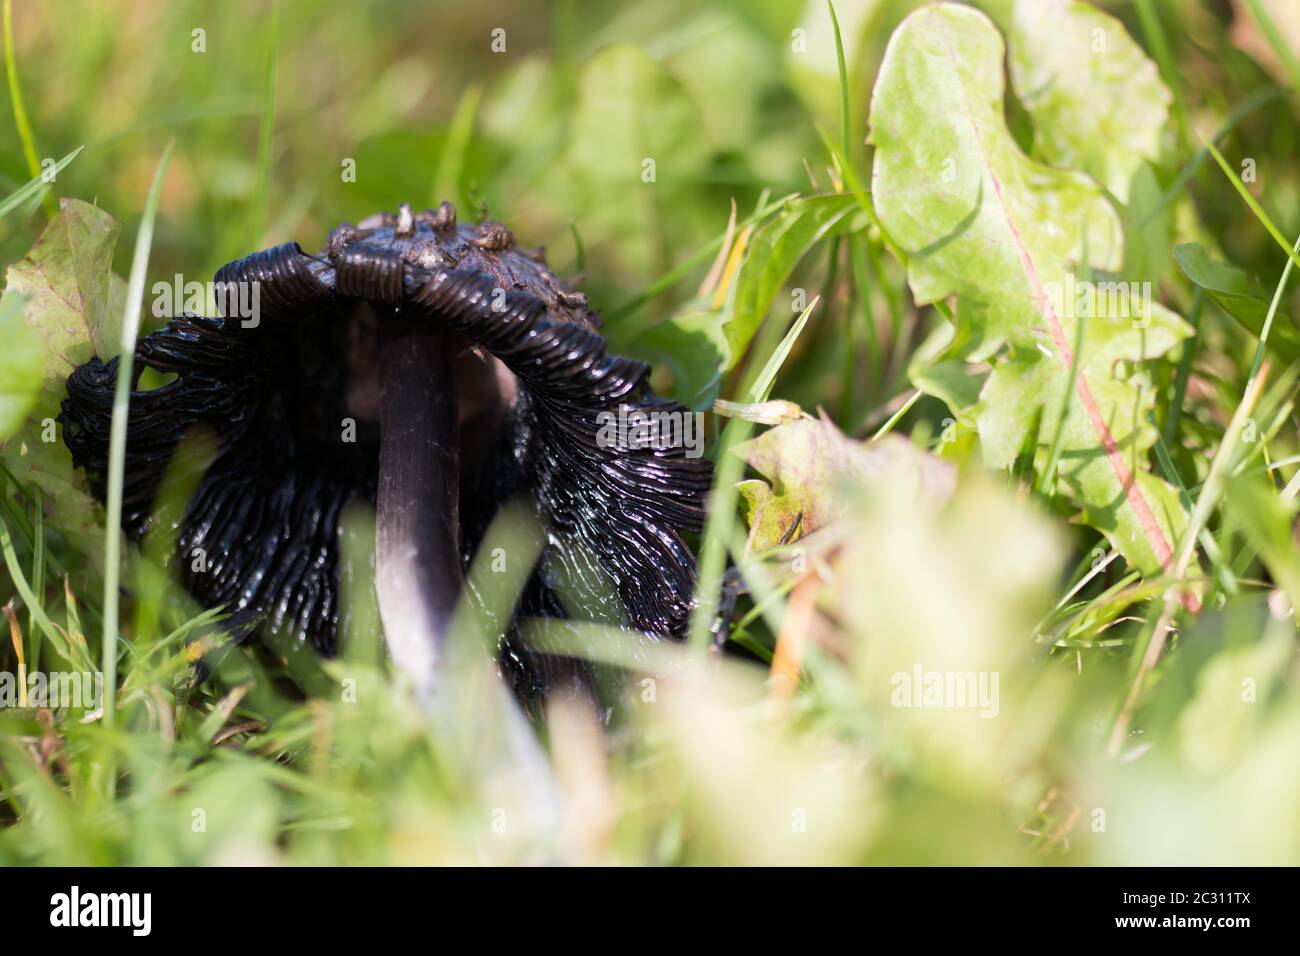 Il cappuccio di inchiostro shaggy troppo maturo (Coprinus comatus) caduto nell'erba Foto Stock